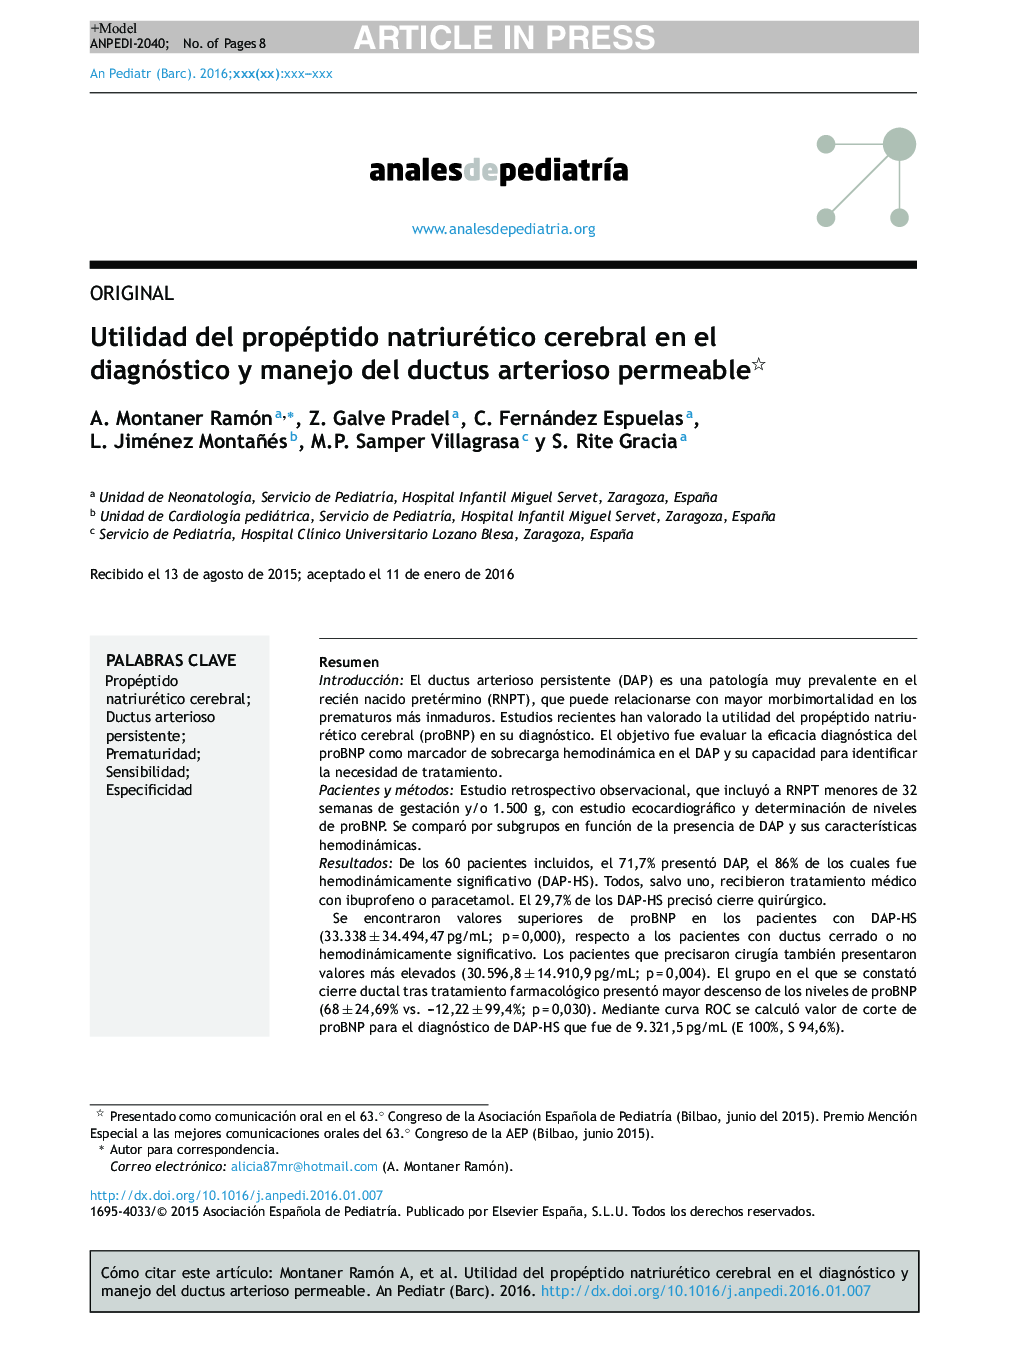 Utilidad del propéptido natriurético cerebral en el diagnóstico y manejo del ductus arterioso permeable